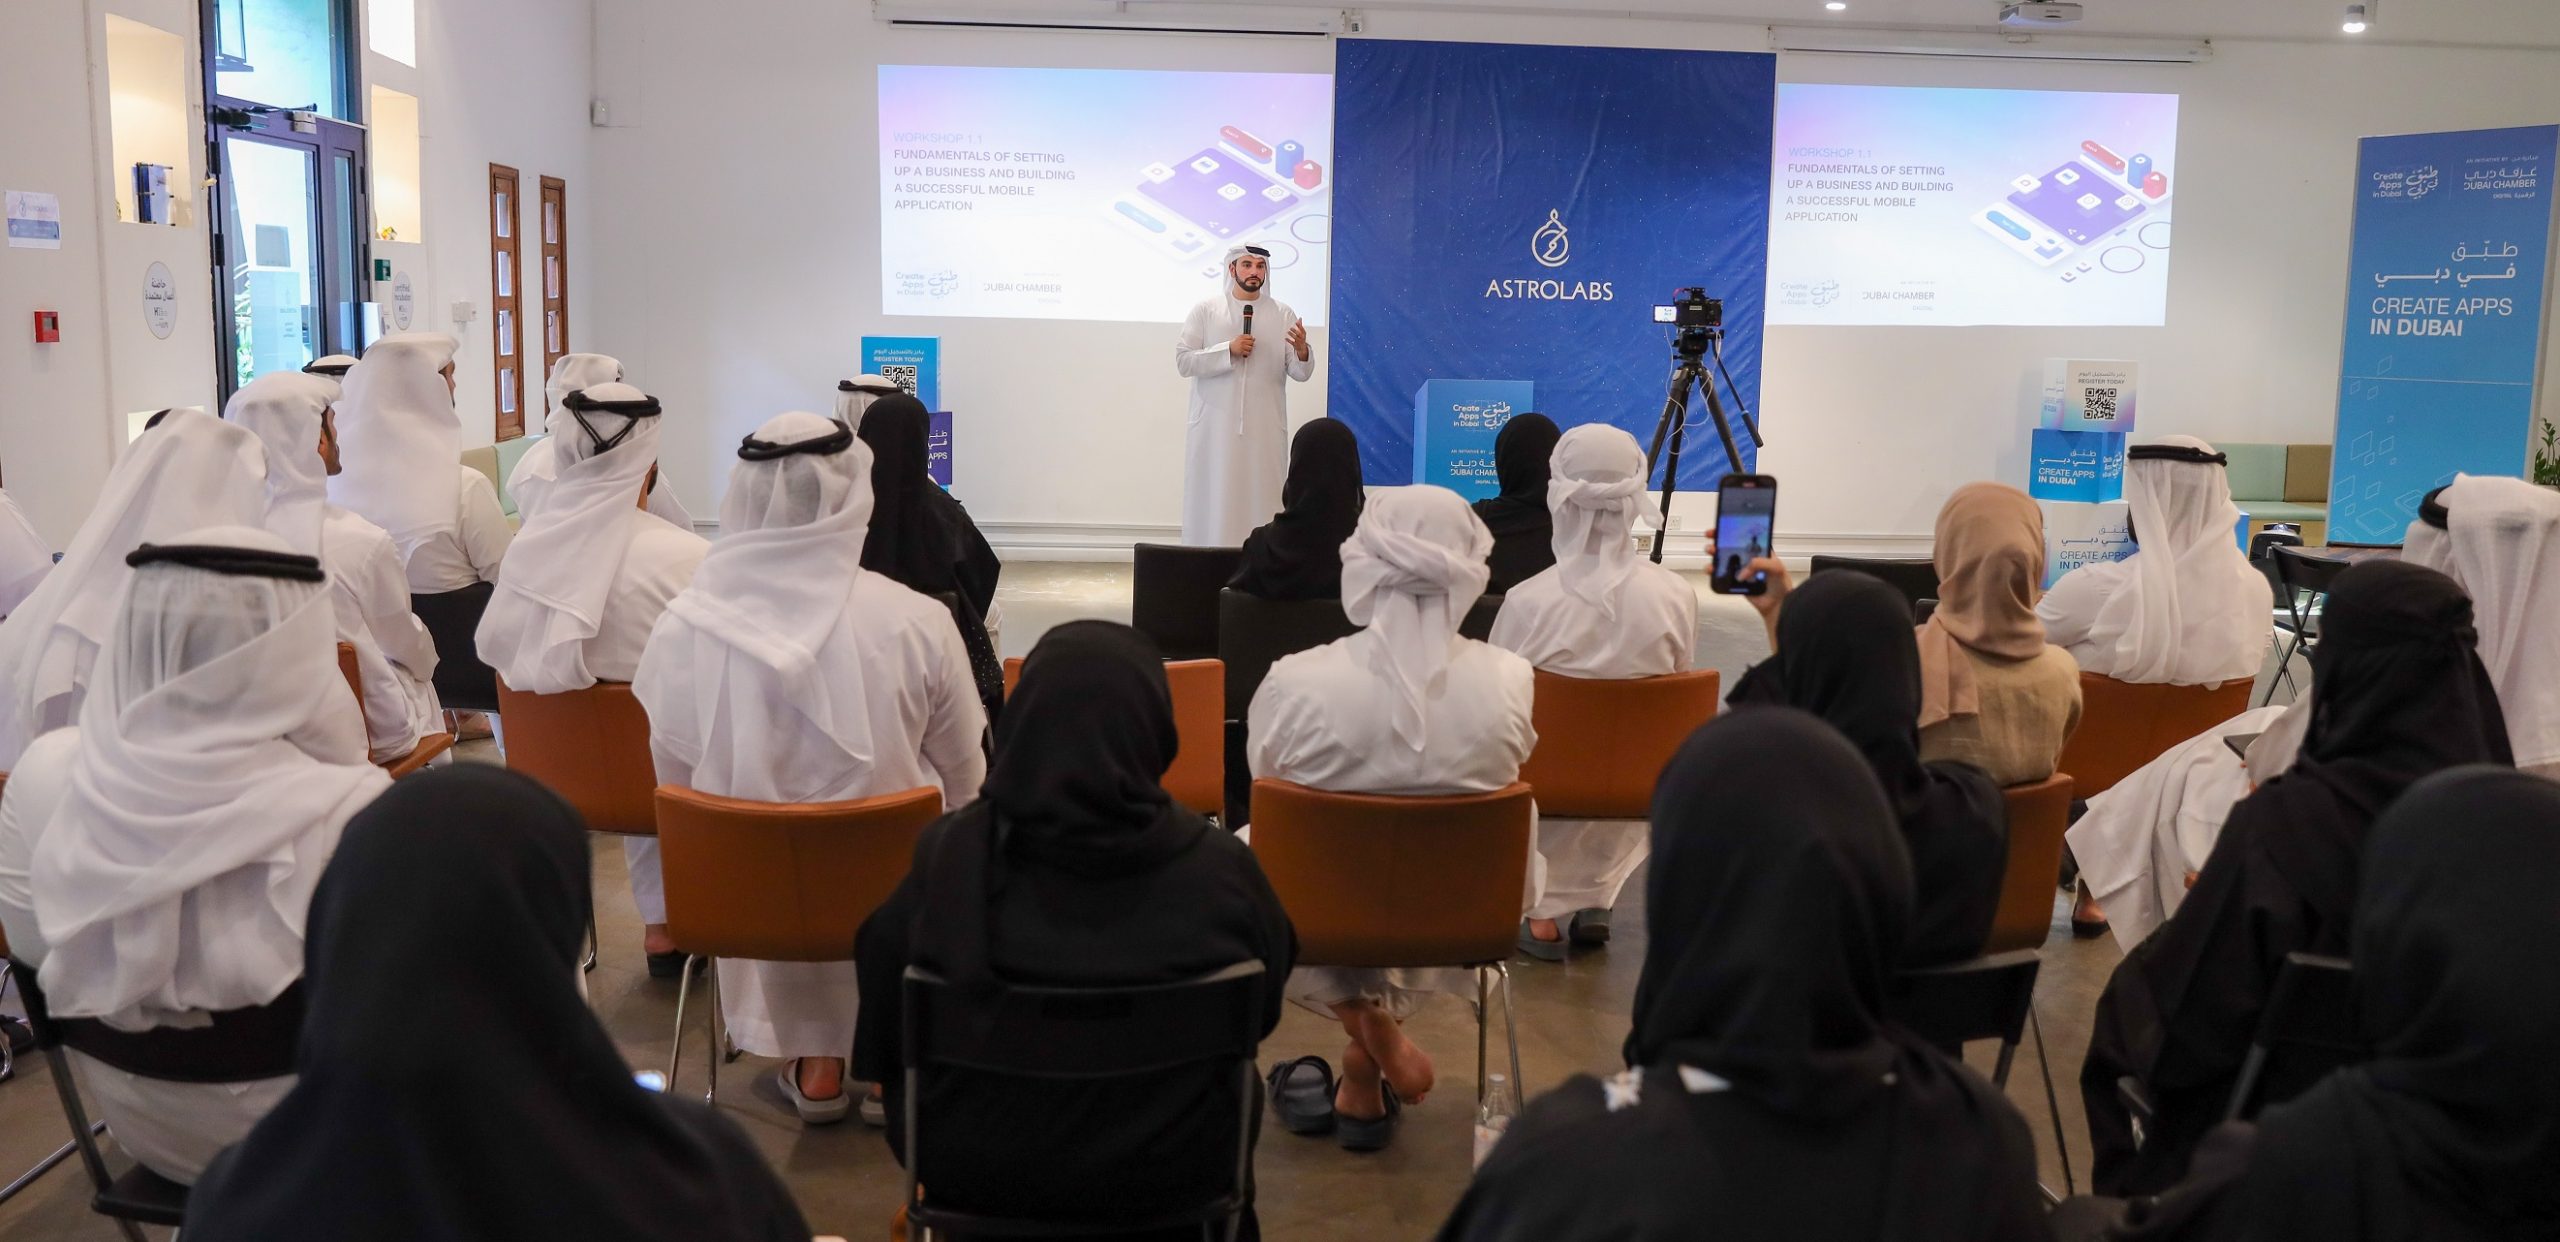 غرفة دبي للاقتصاد الرقمي تنظم ورشة عمل لتطوير قدرات المبرمجين الإماراتيين في إنشاء المشاريع التجارية وتطوير التطبيقات الذكية تحت مظلة مبادرة “طبّق في دبي”